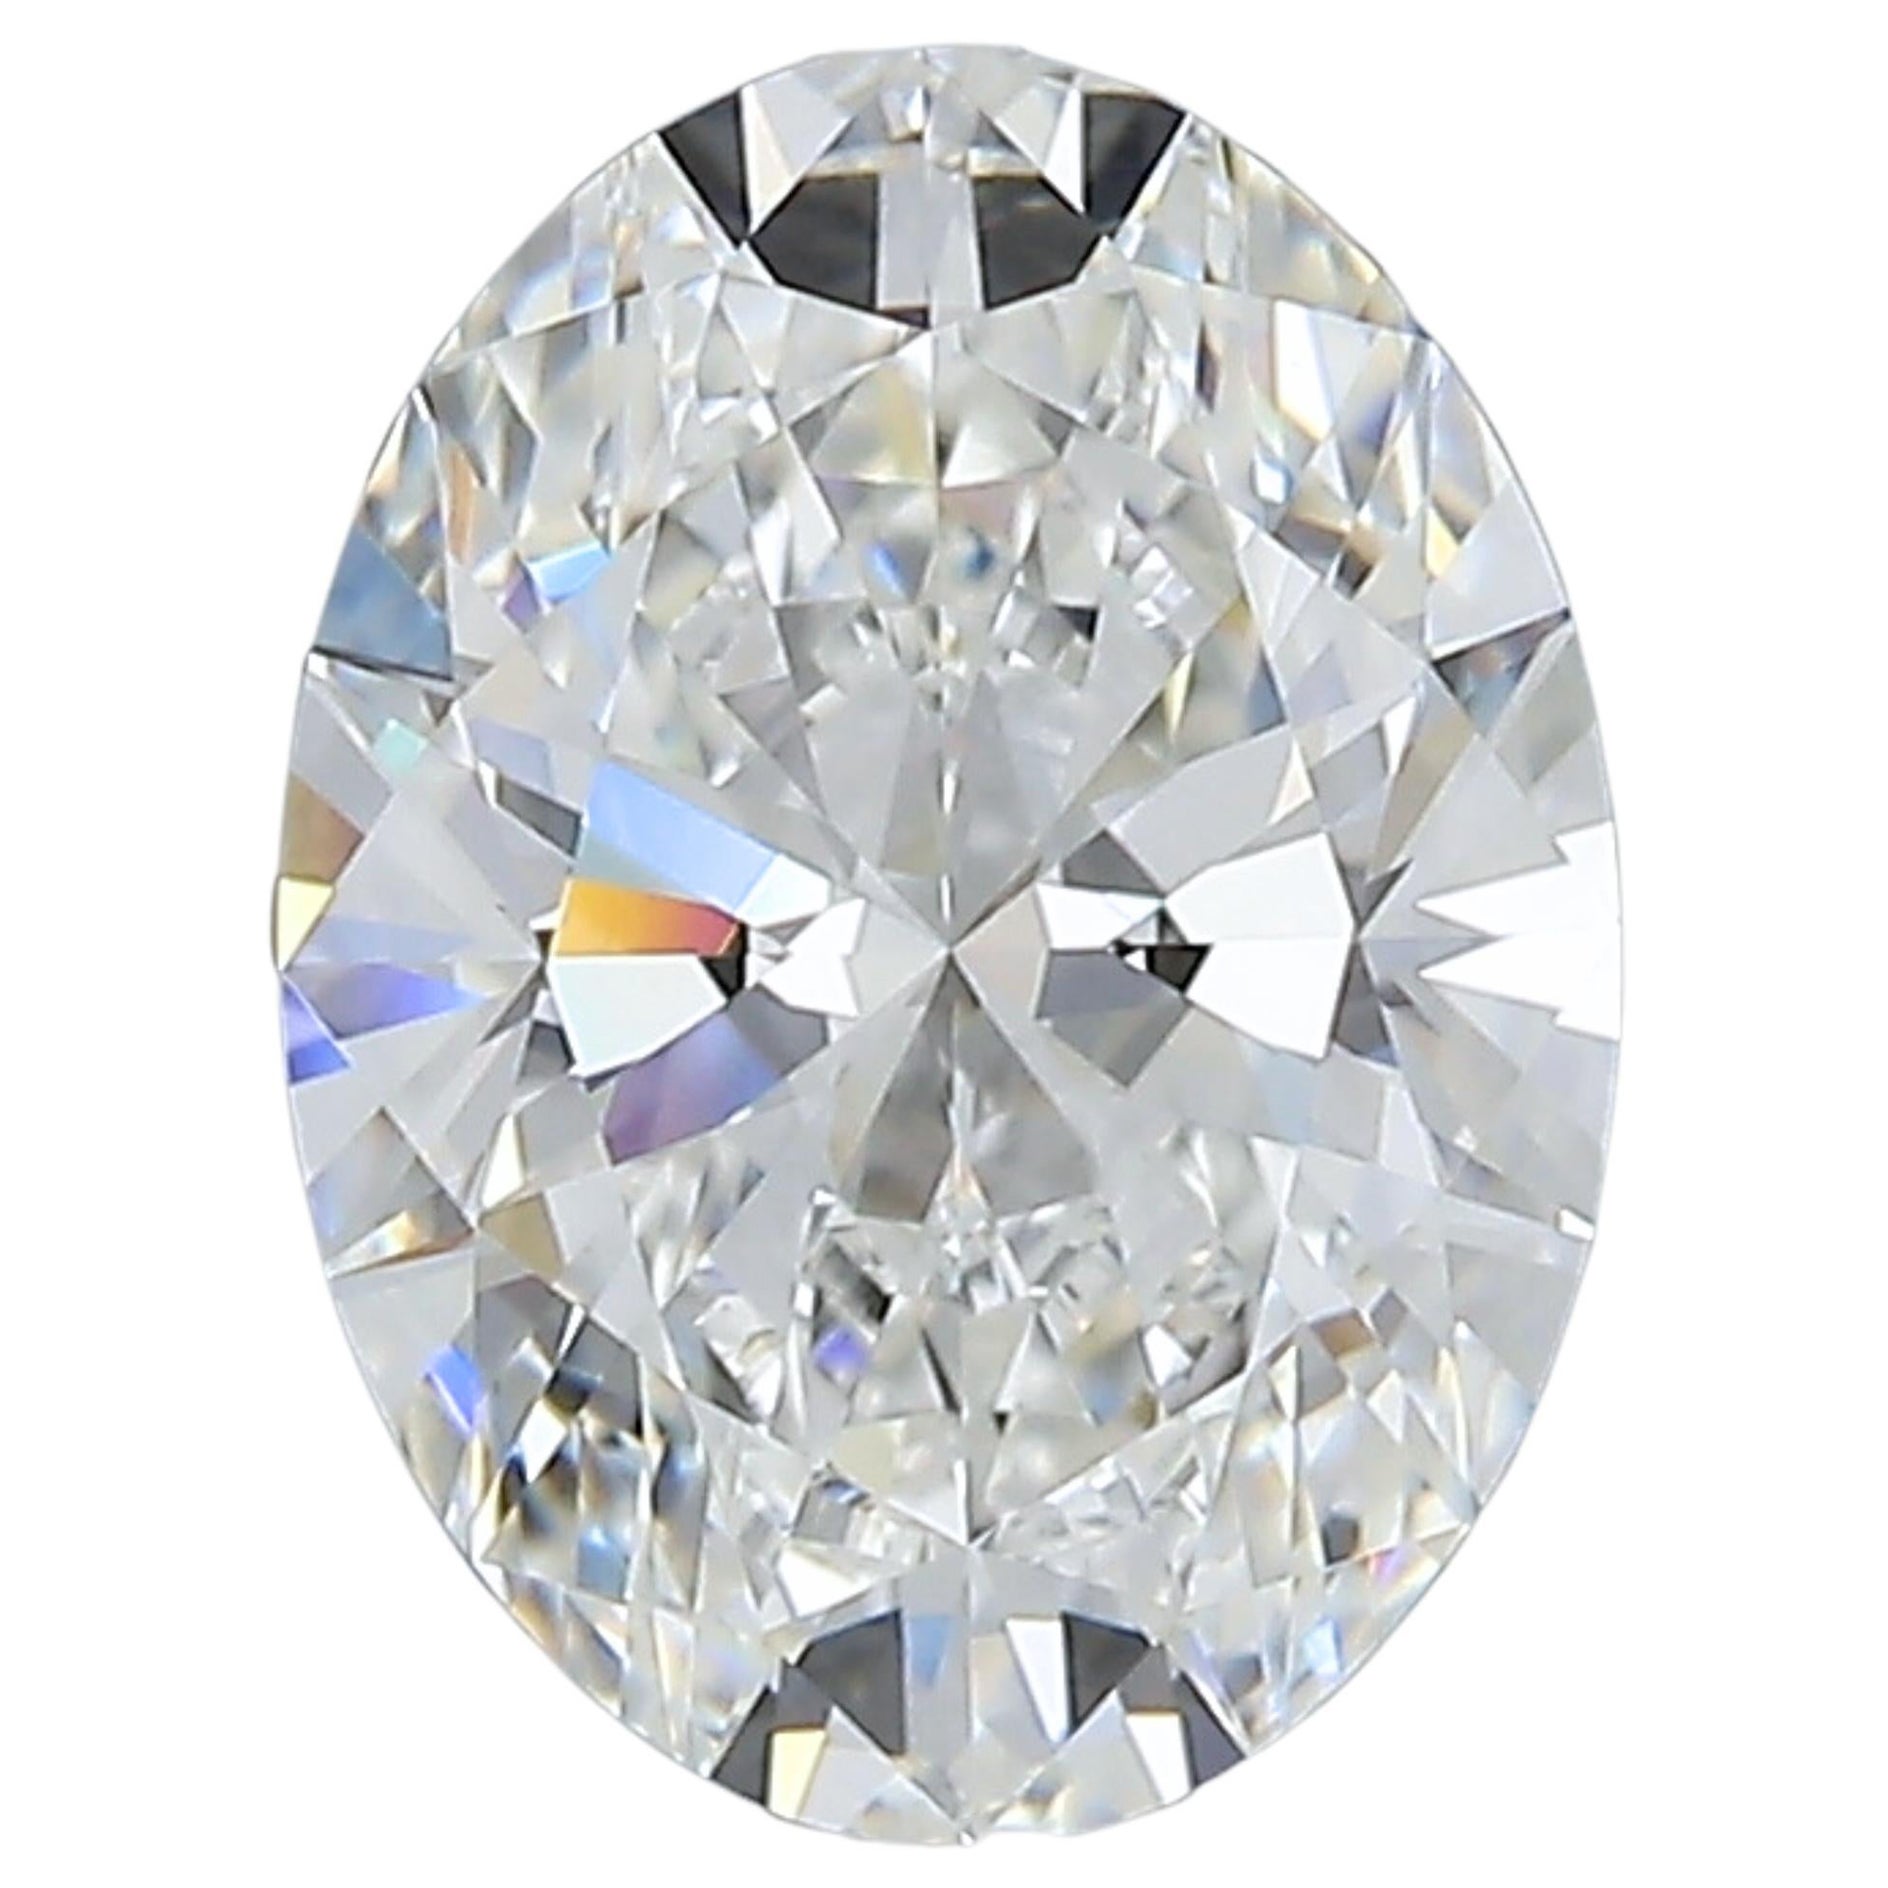 Sparkling 1.73 carat Oval Cut Brilliant Diamond